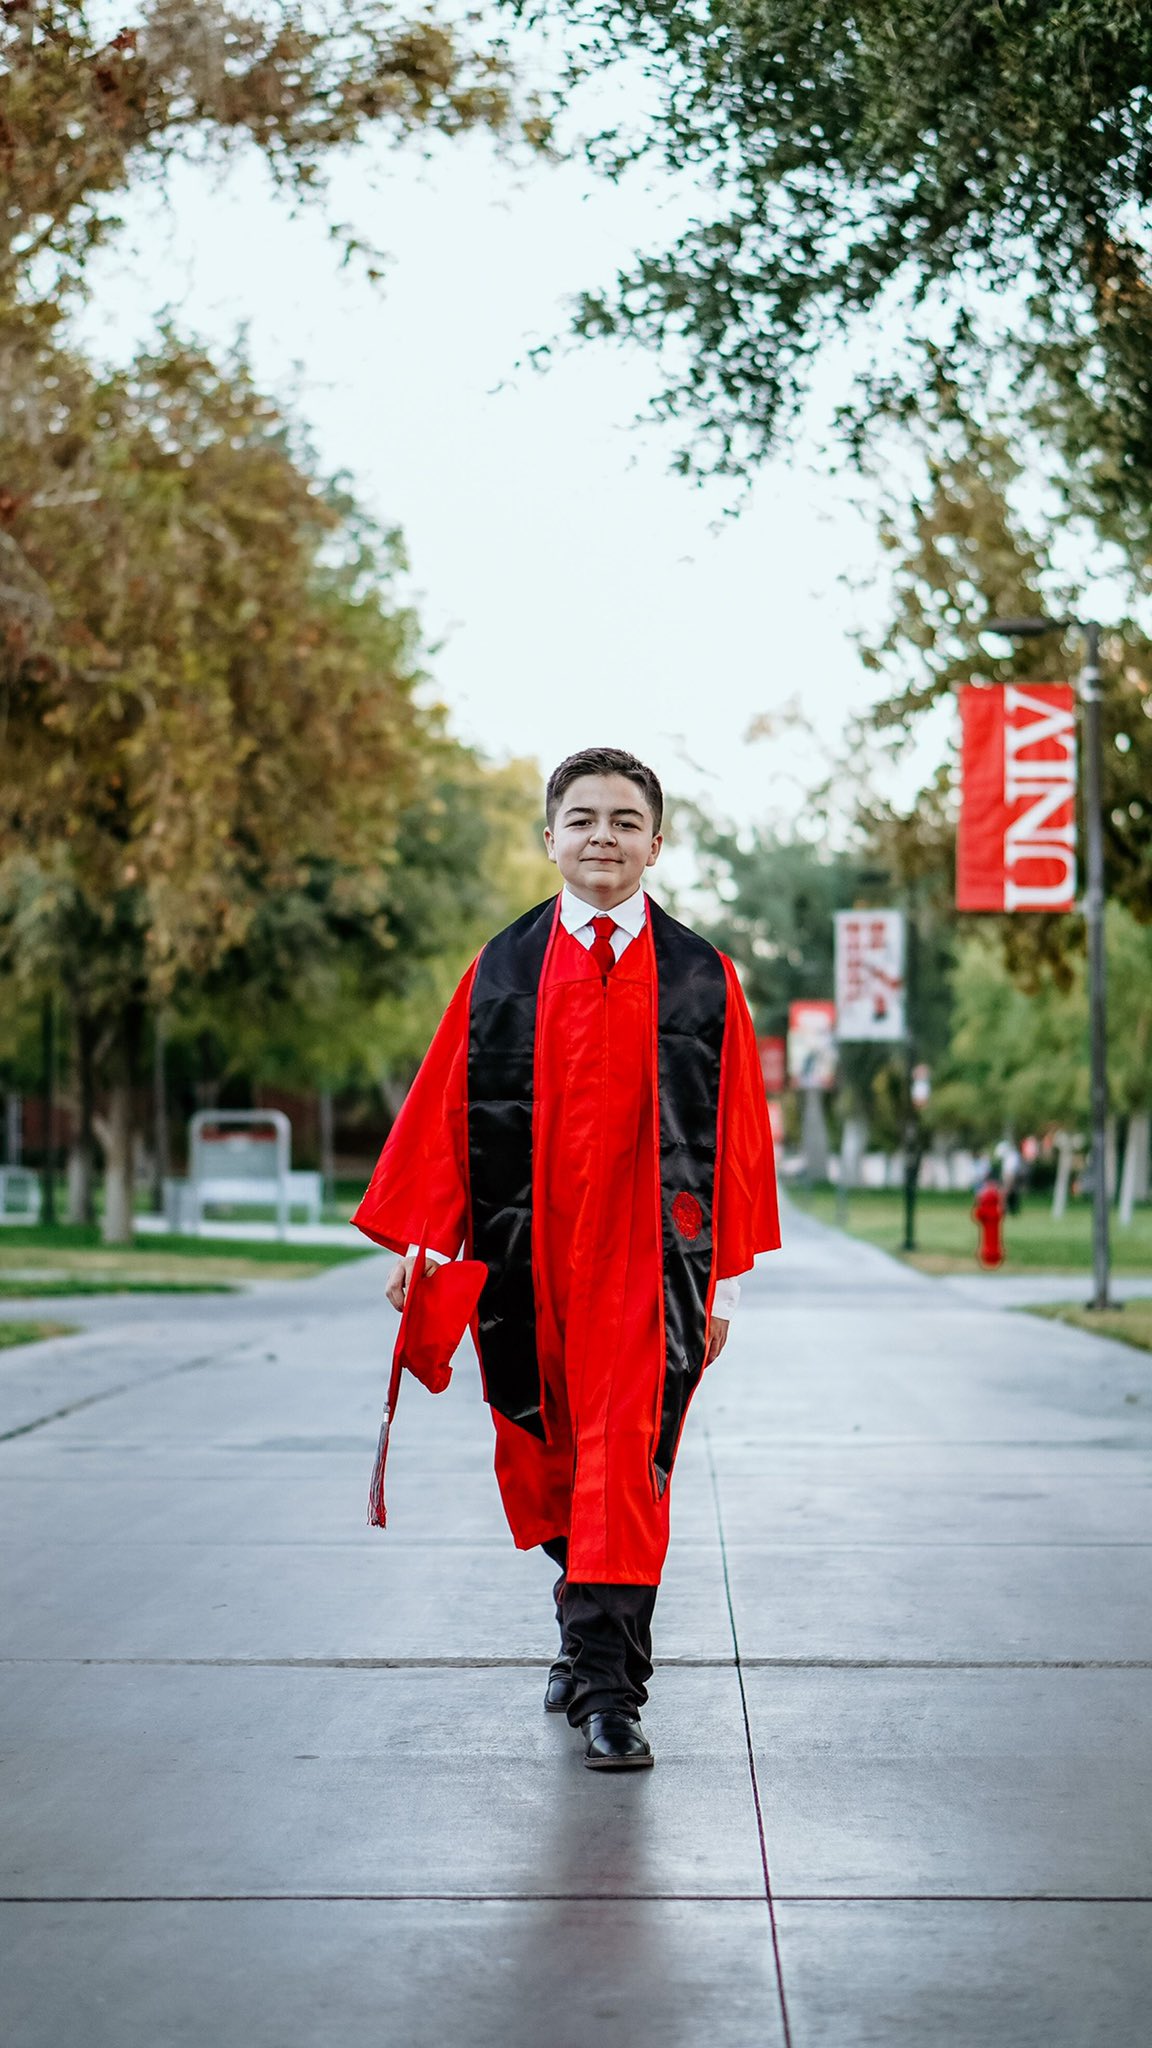 Jack Rico: El joven de 15 años que conseguirá su quinto título universitario